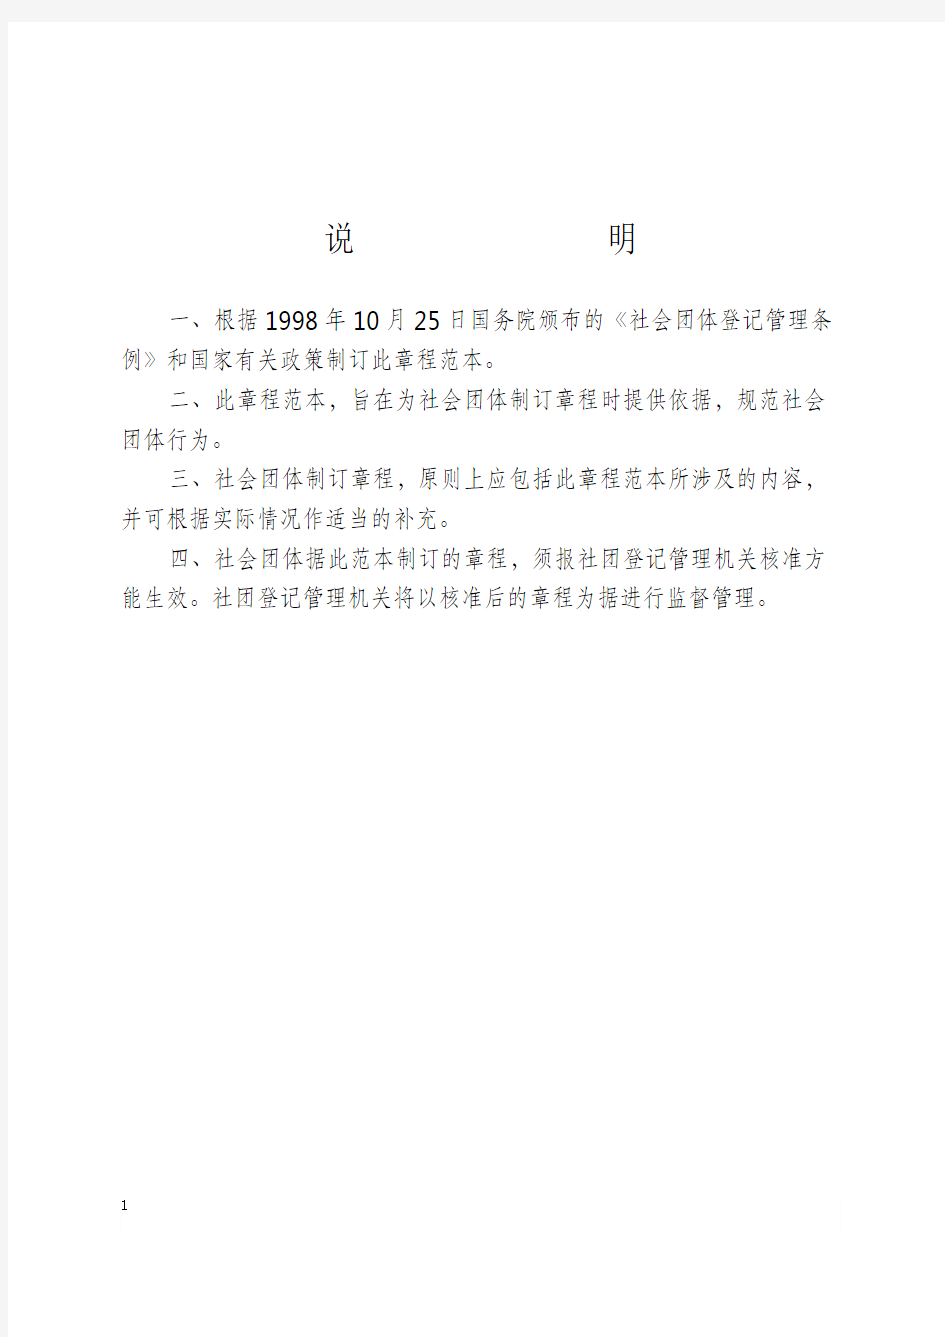 社会团体章程示范文本中华人民共和国民政部制说明